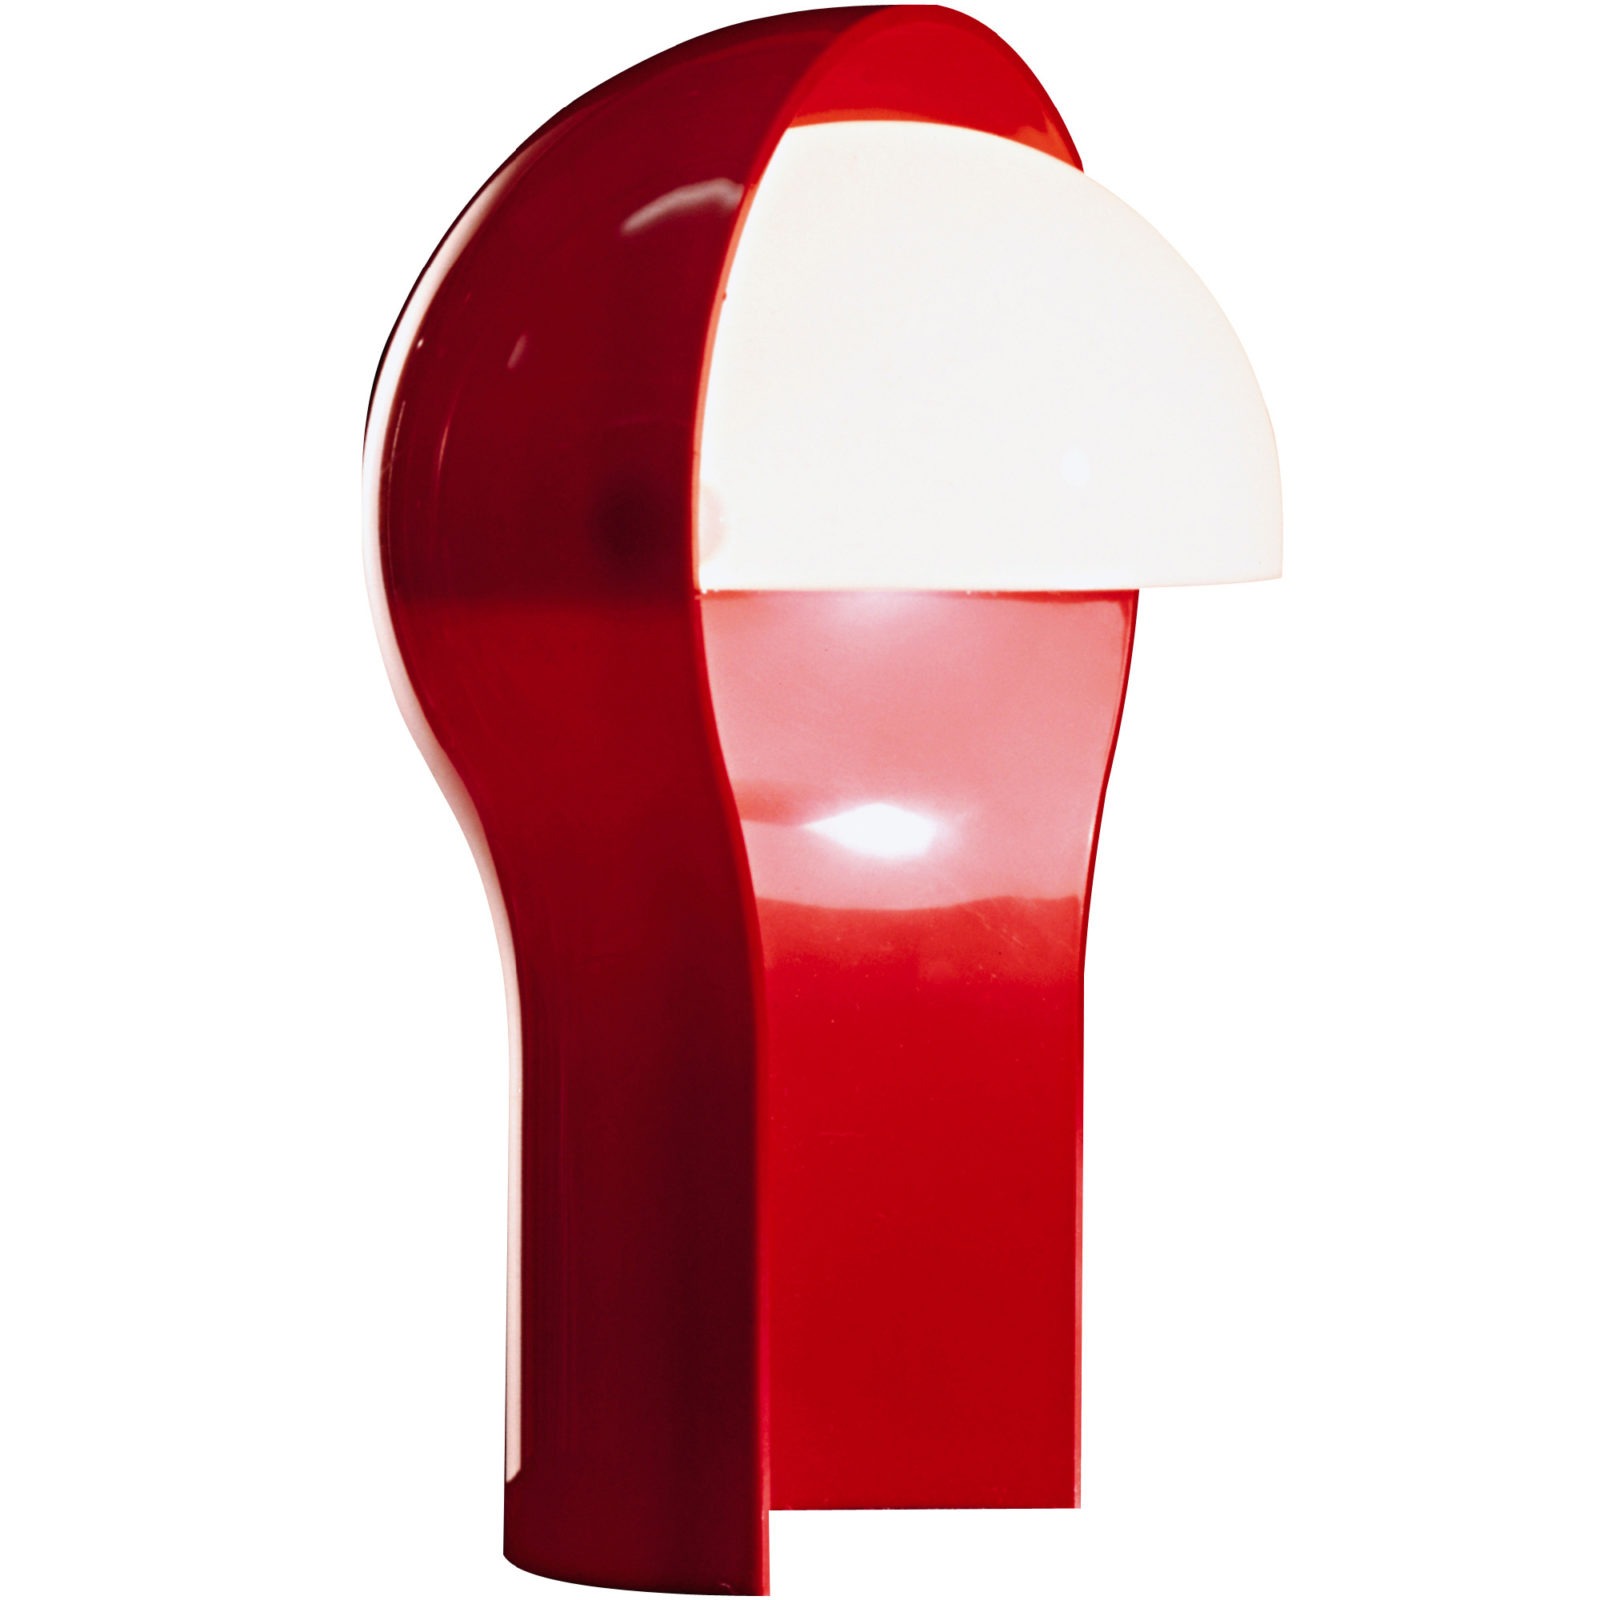 Röd lampa i plast med vit vridbar skärm, TELEGONO.